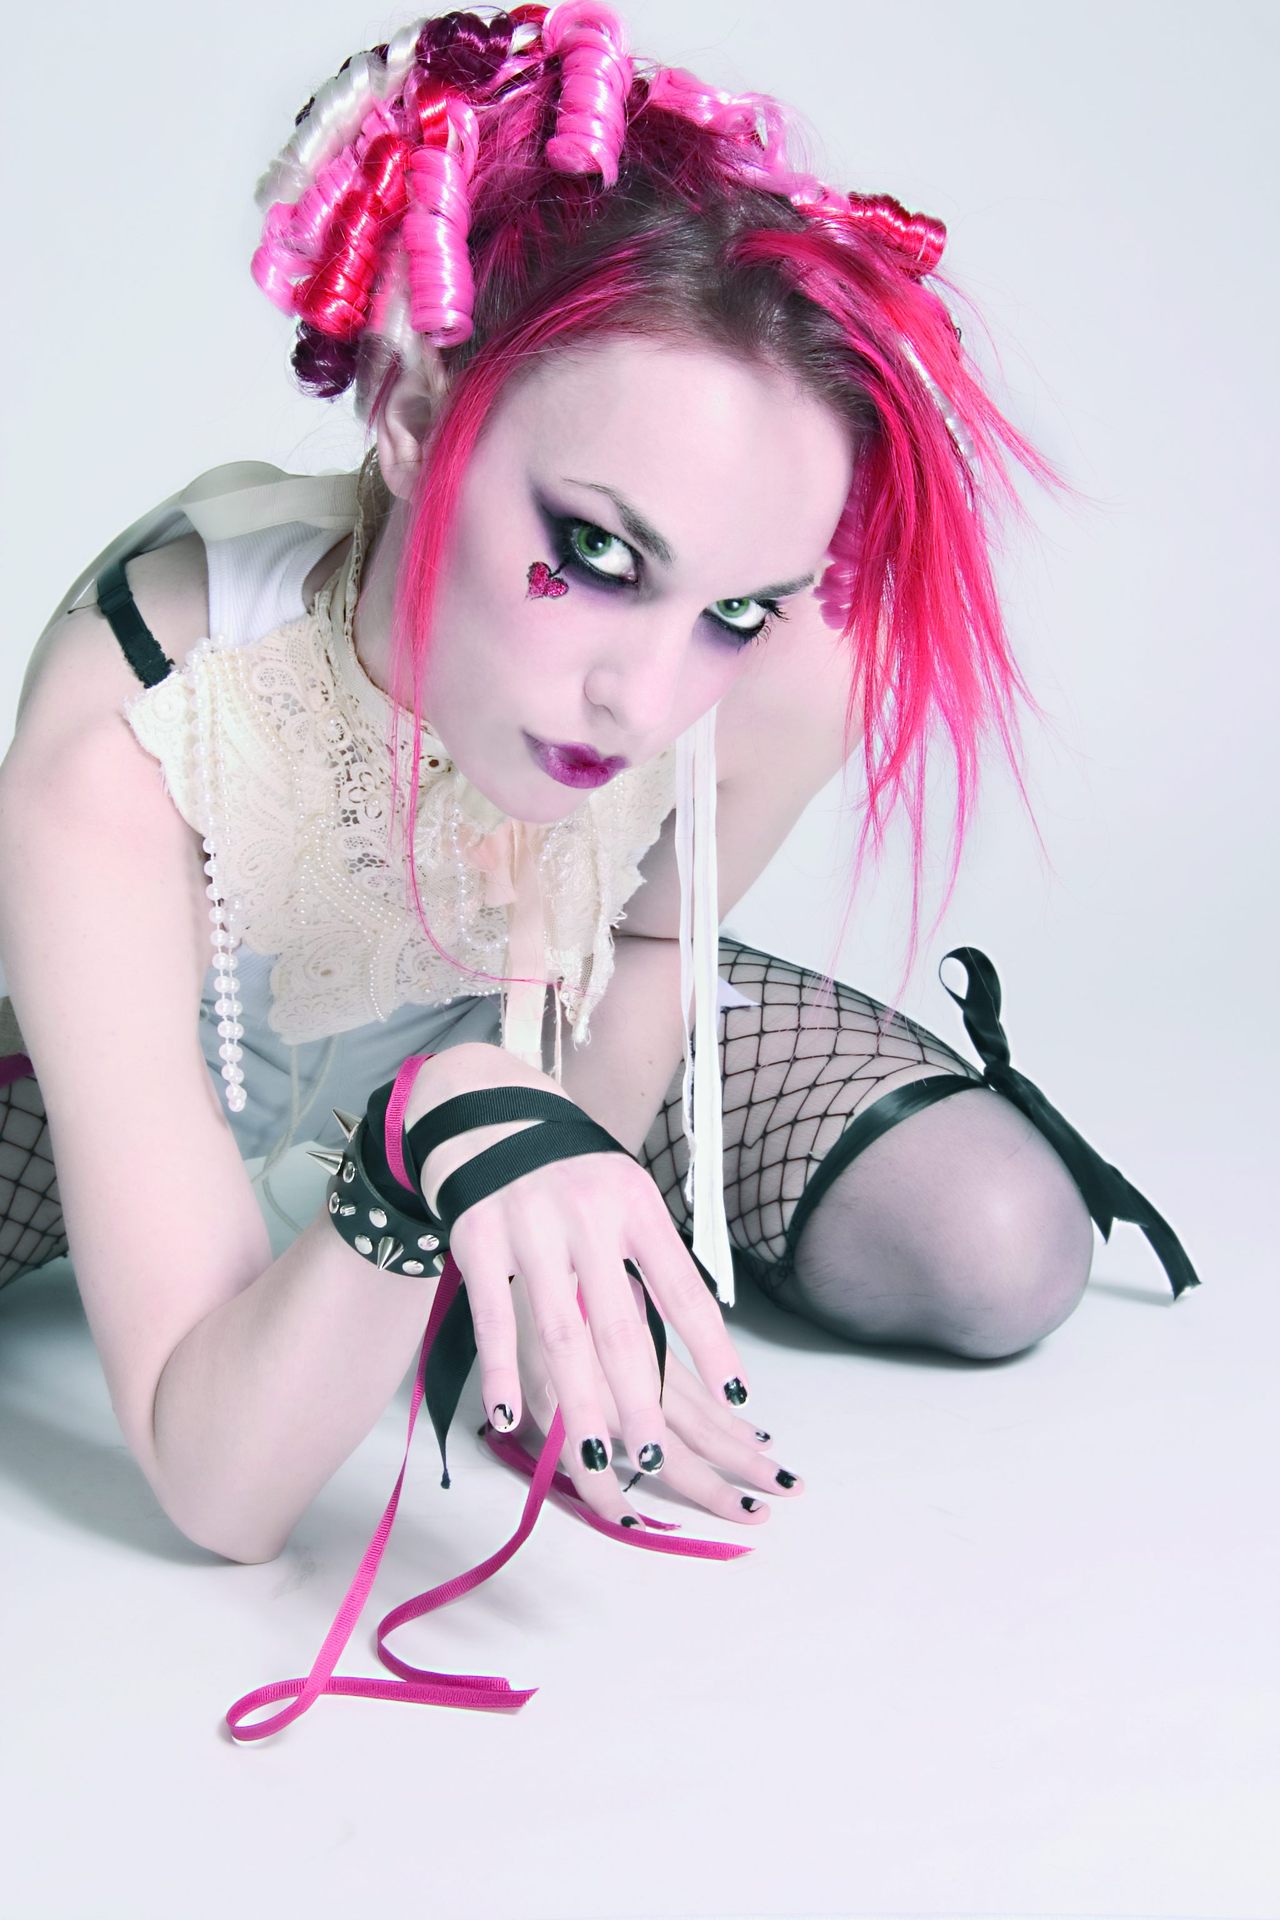 Emilie Autumn Emilie Autumn Photo Fanpop